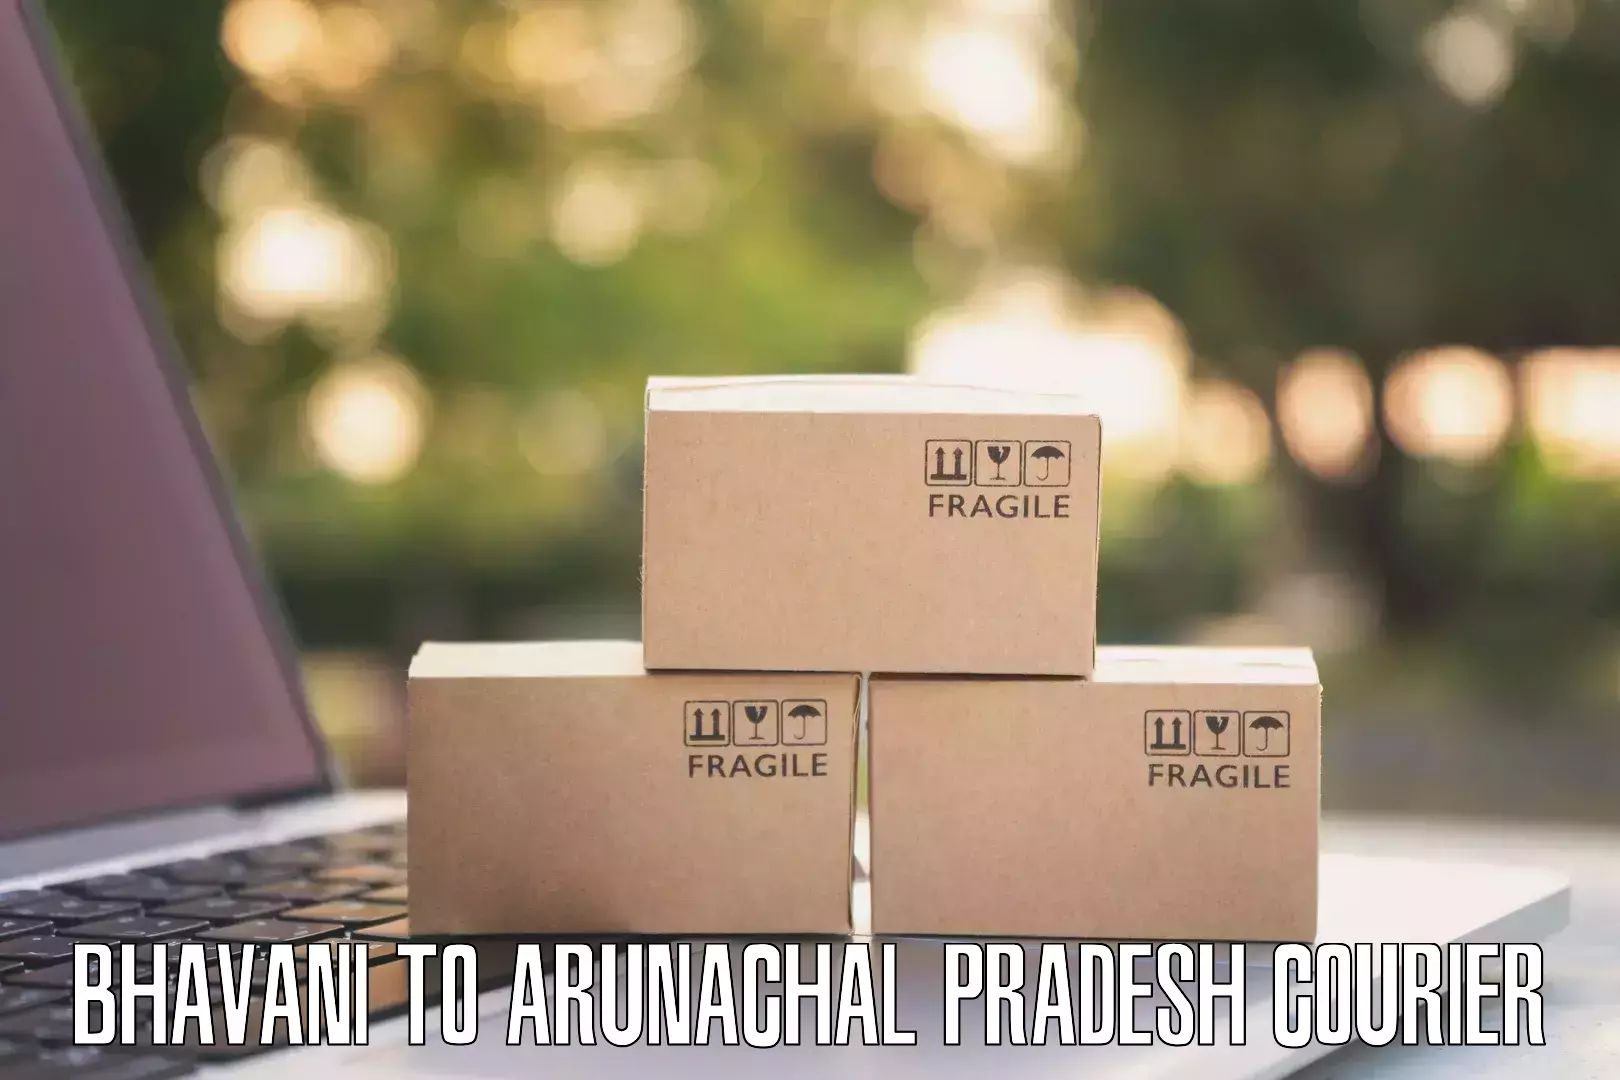 Next-generation courier services Bhavani to Arunachal Pradesh